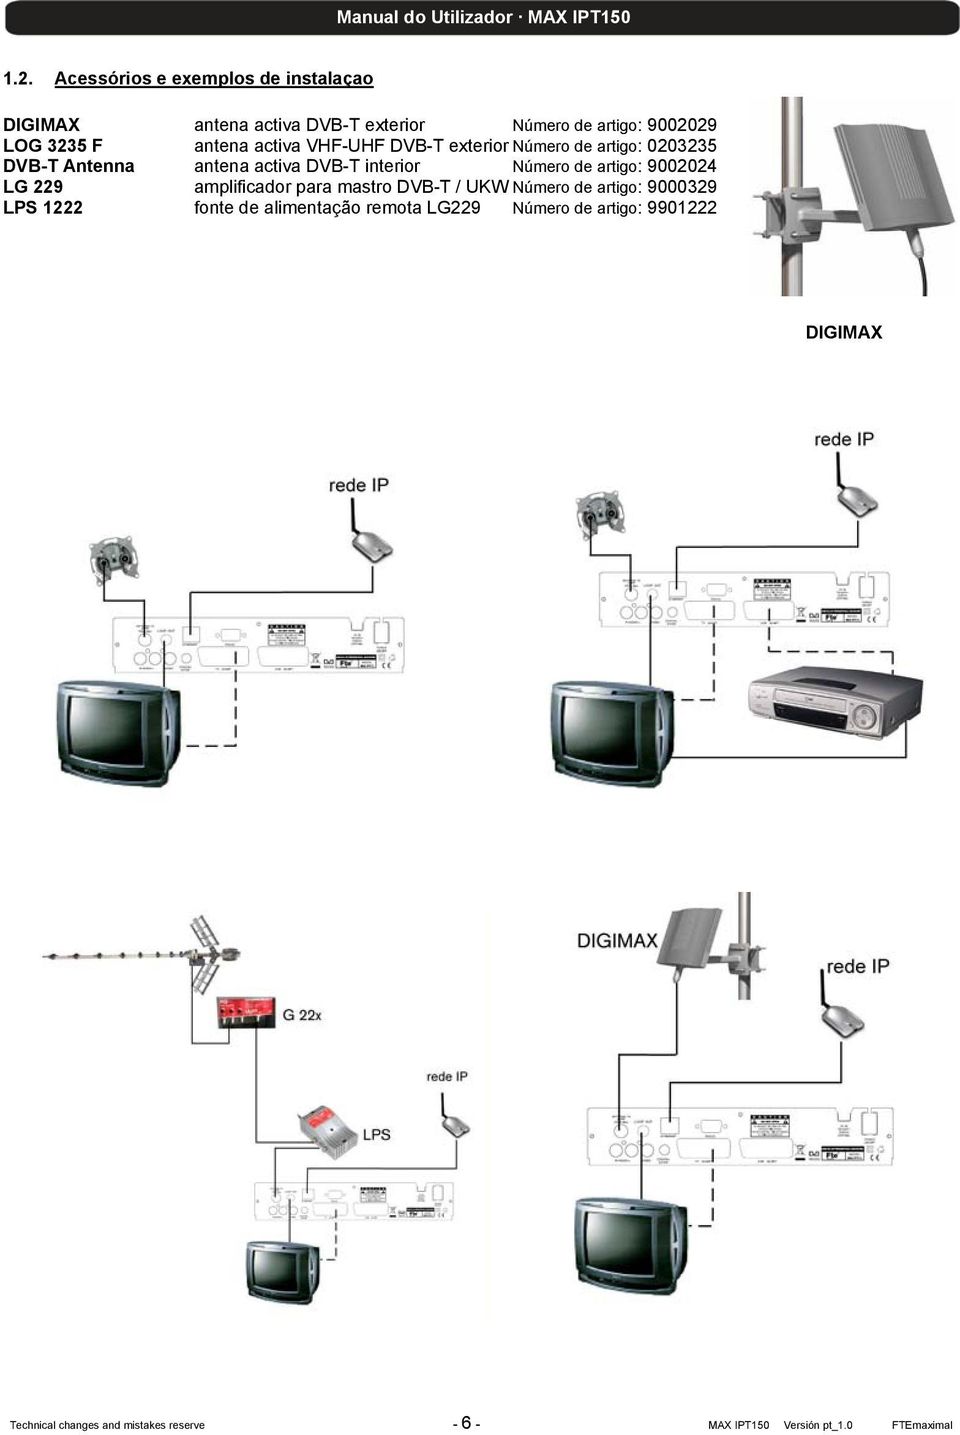 artigo: 9002024 LG 229 amplificador para mastro DVB-T / UKW Número de artigo: 9000329 LPS 1222 fonte de alimentação